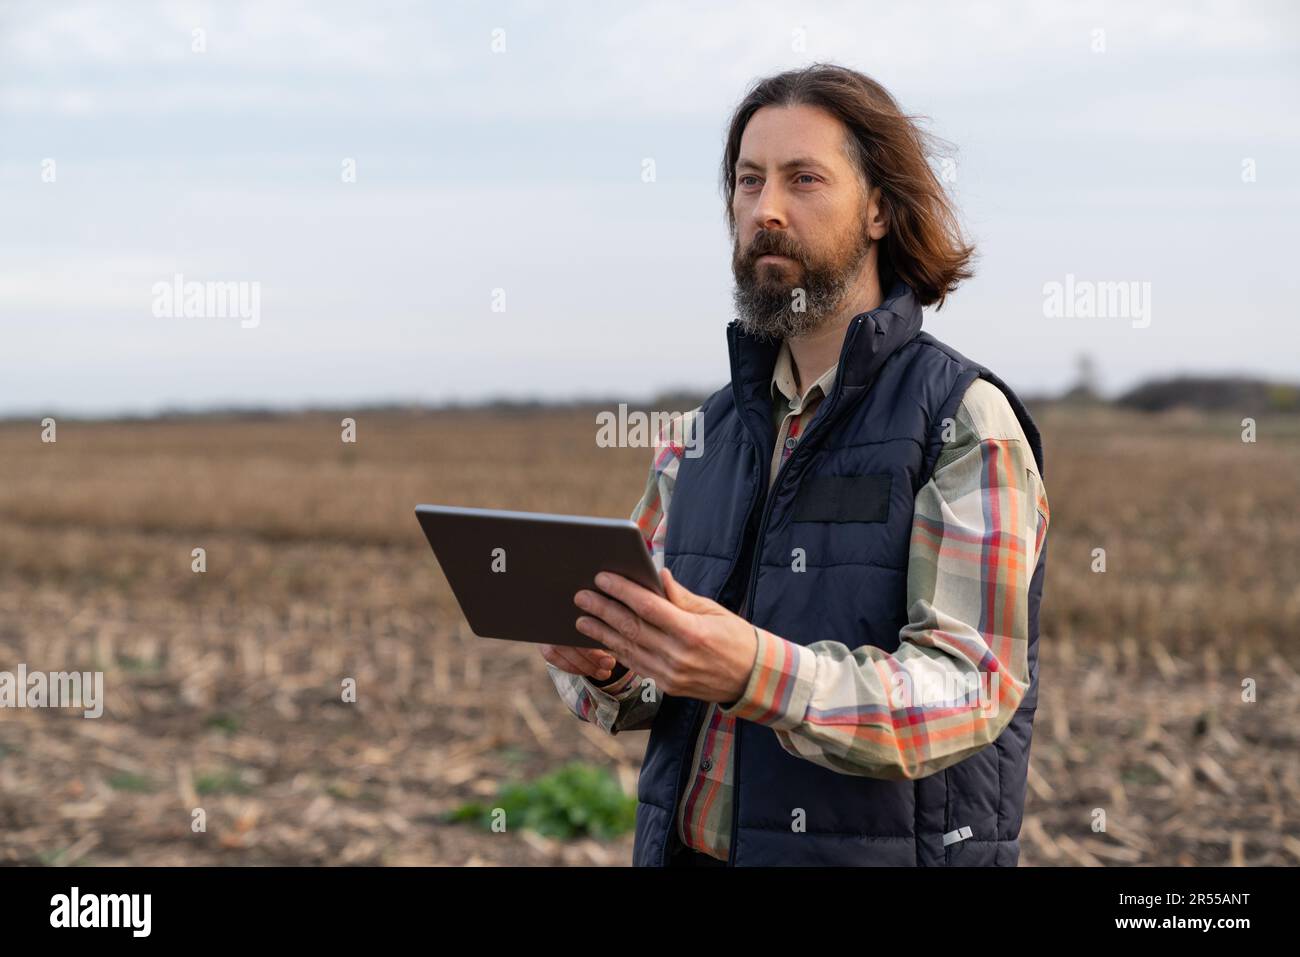 Agriculteur avec une tablette numérique dans un domaine agricole. Agriculture intelligente et agriculture numérique. Photo de haute qualité Banque D'Images